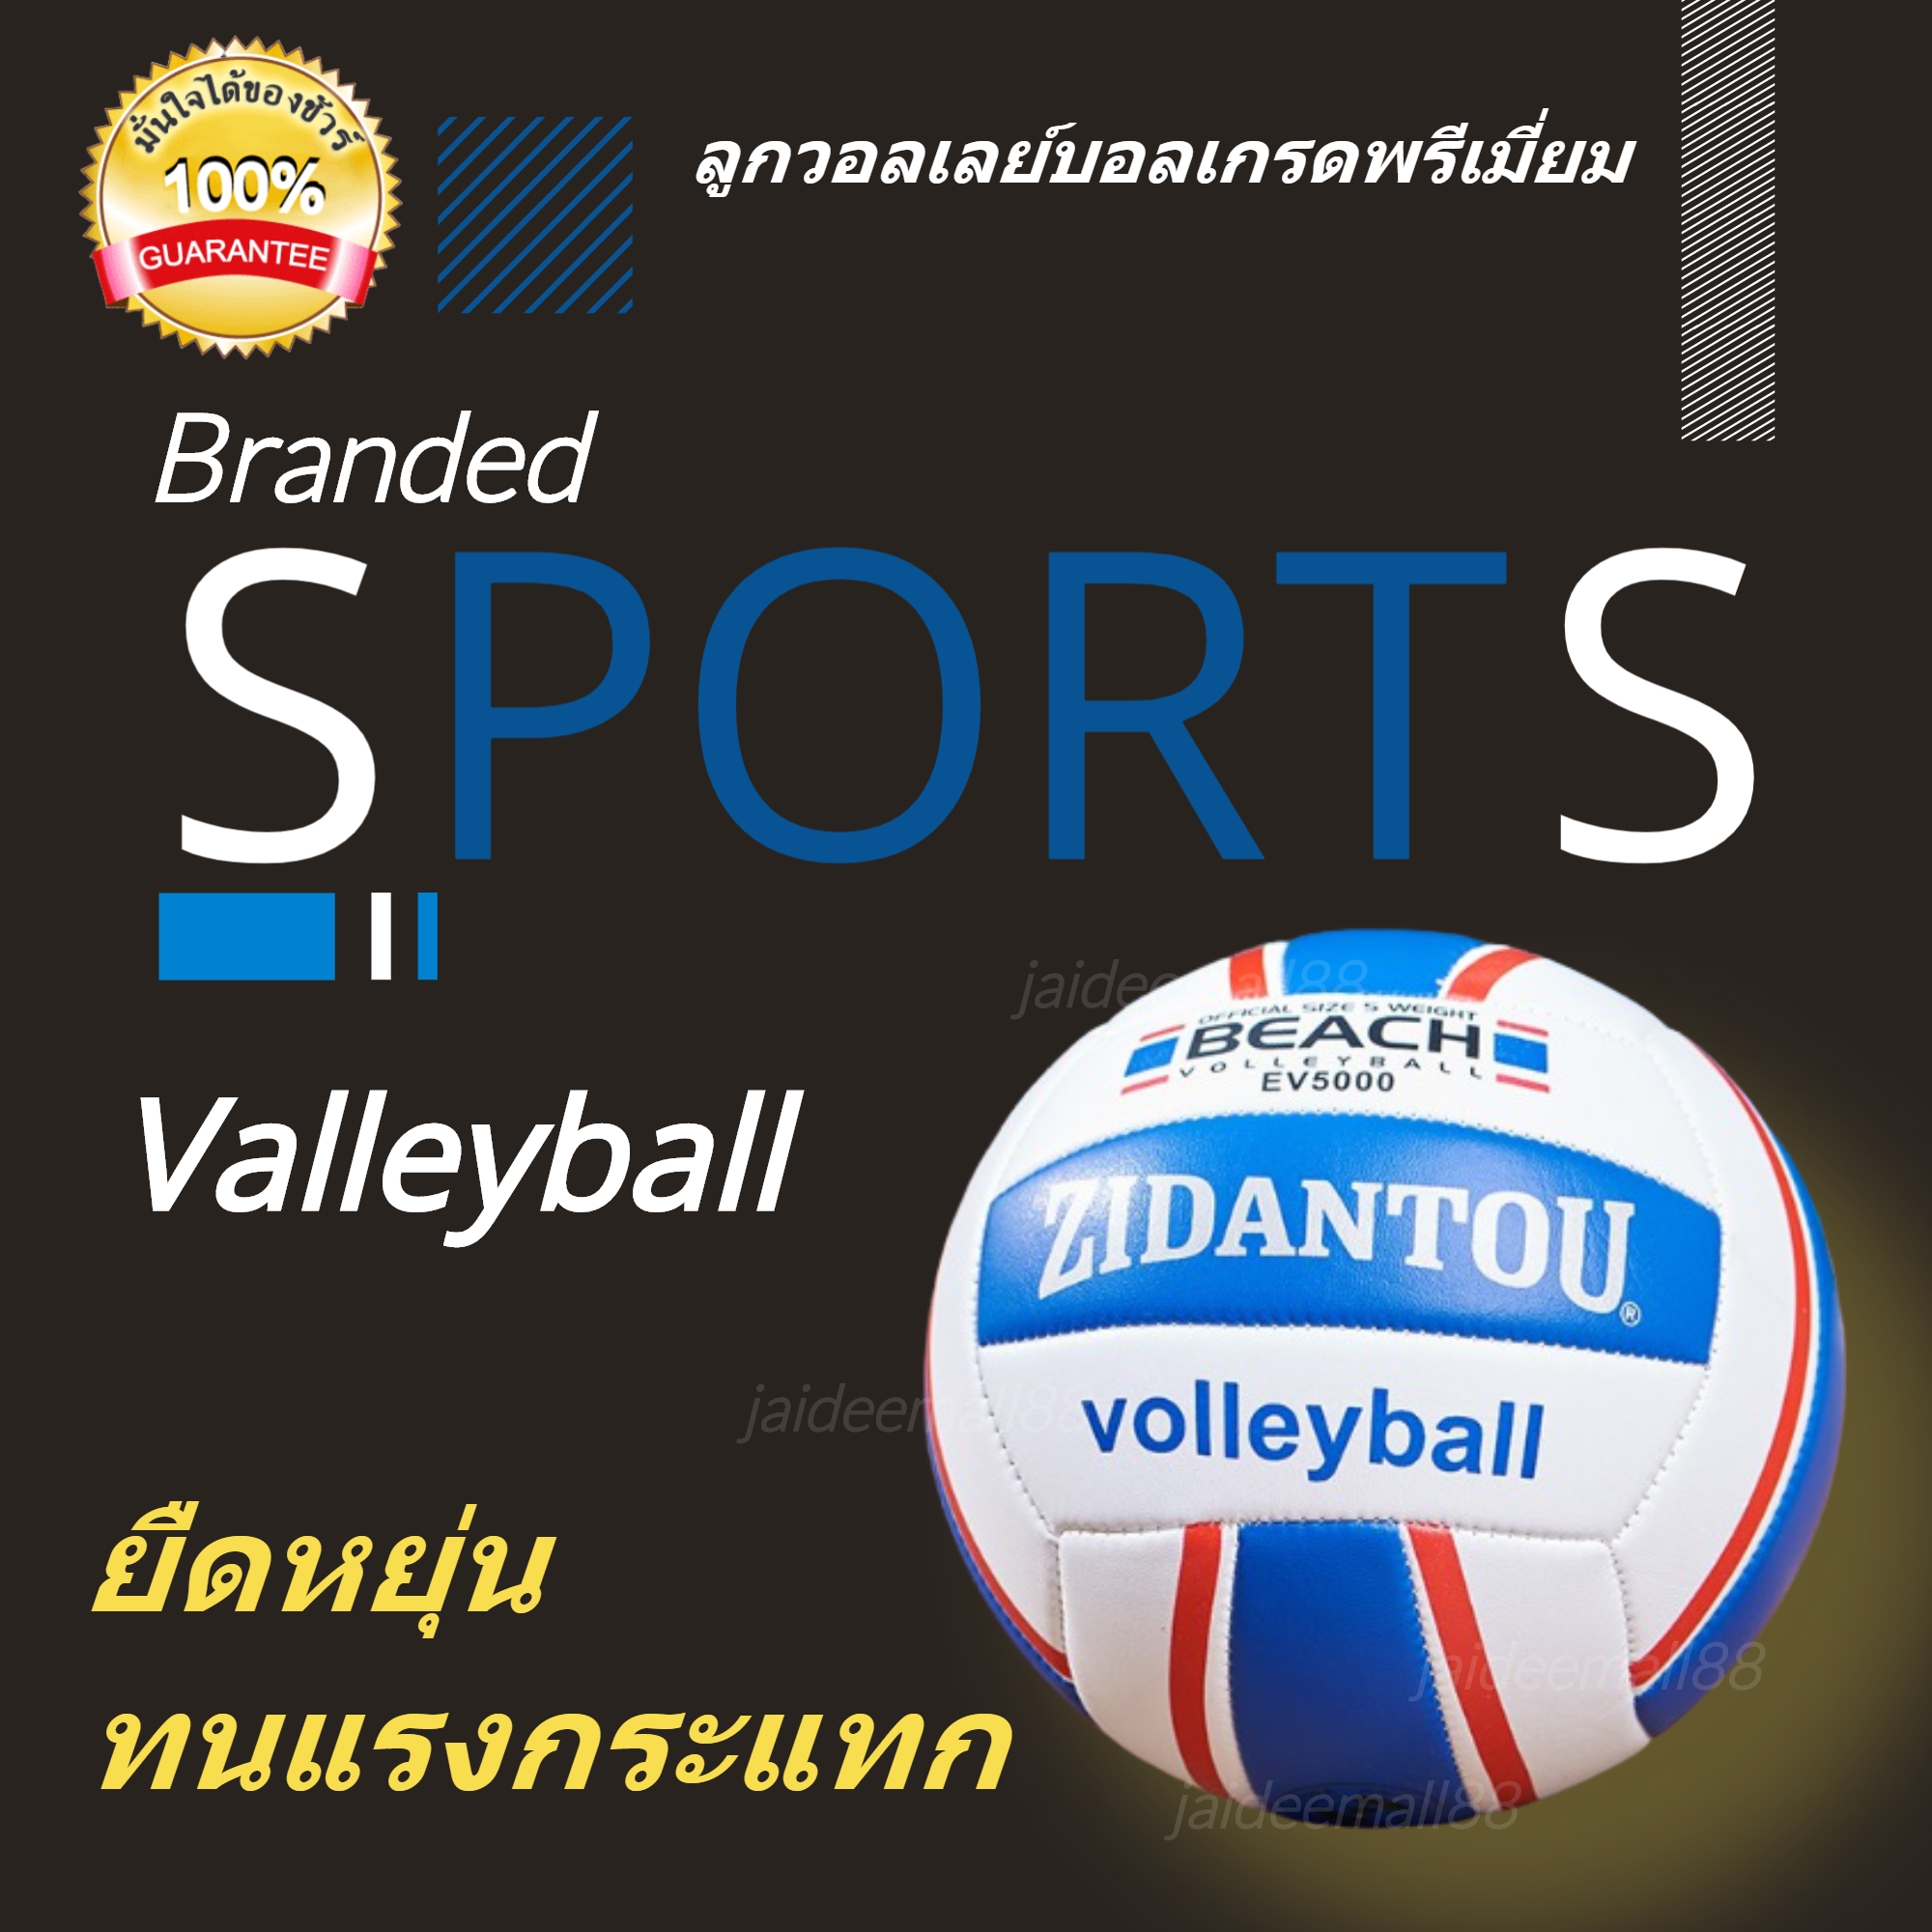 พร้อมส่ง สต๊อคไทย ลูกวอลเลย์บอล ลูกวอลเล่ย์บอลมาตรฐานเบอร์ 5 Volleyball วอลเลย์บอล วอลเลย์บอลนิ่ม วอลเลย์บอลนุ่ม วอลเลย์บอลถูก ลูกวอลเลย์บอล ลูกวอลเลยบอล 2020 วอลเล่ย์บอล วอลเล่บอล วอลเล่บอลแท้